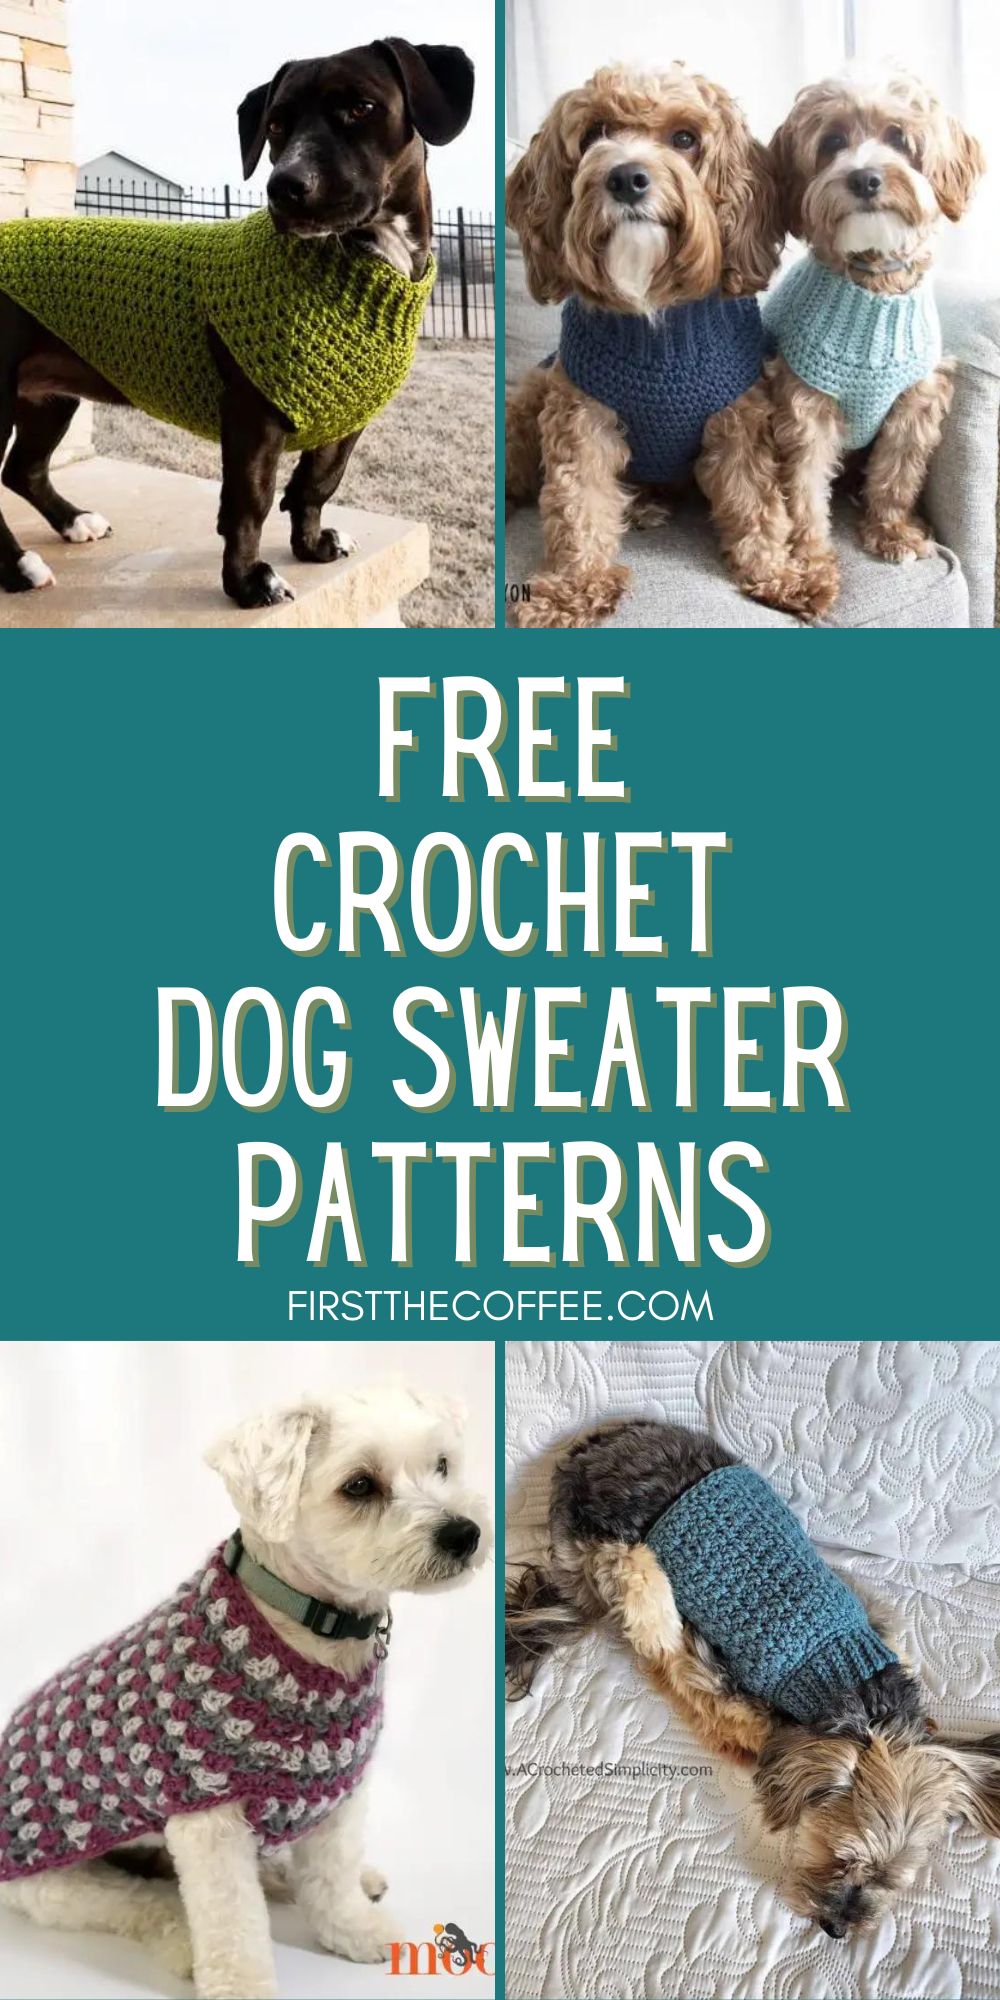 Free Crochet Dog Sweater Patterns